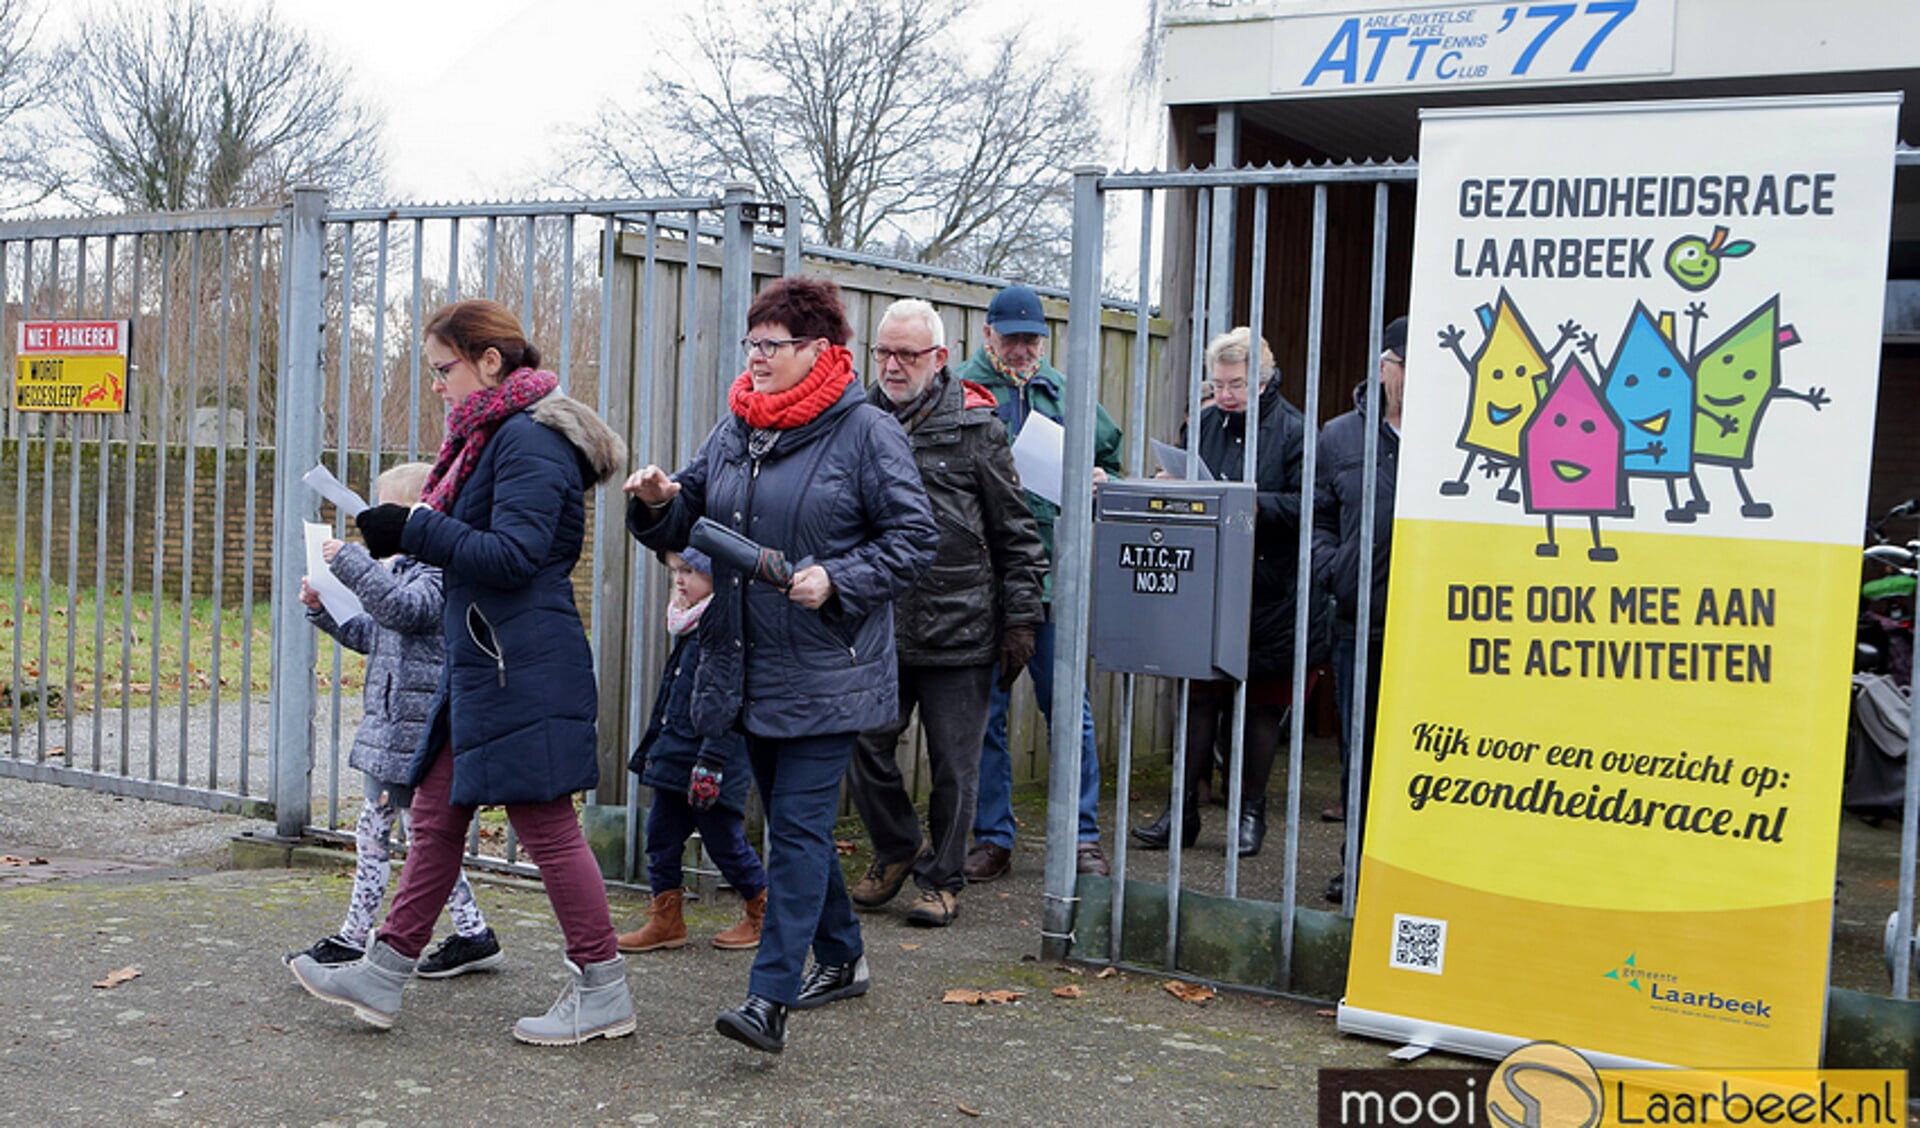 Archieffoto Gezondheidsrace Laarbeek 2017: ATTC'77 hield een wandeltocht